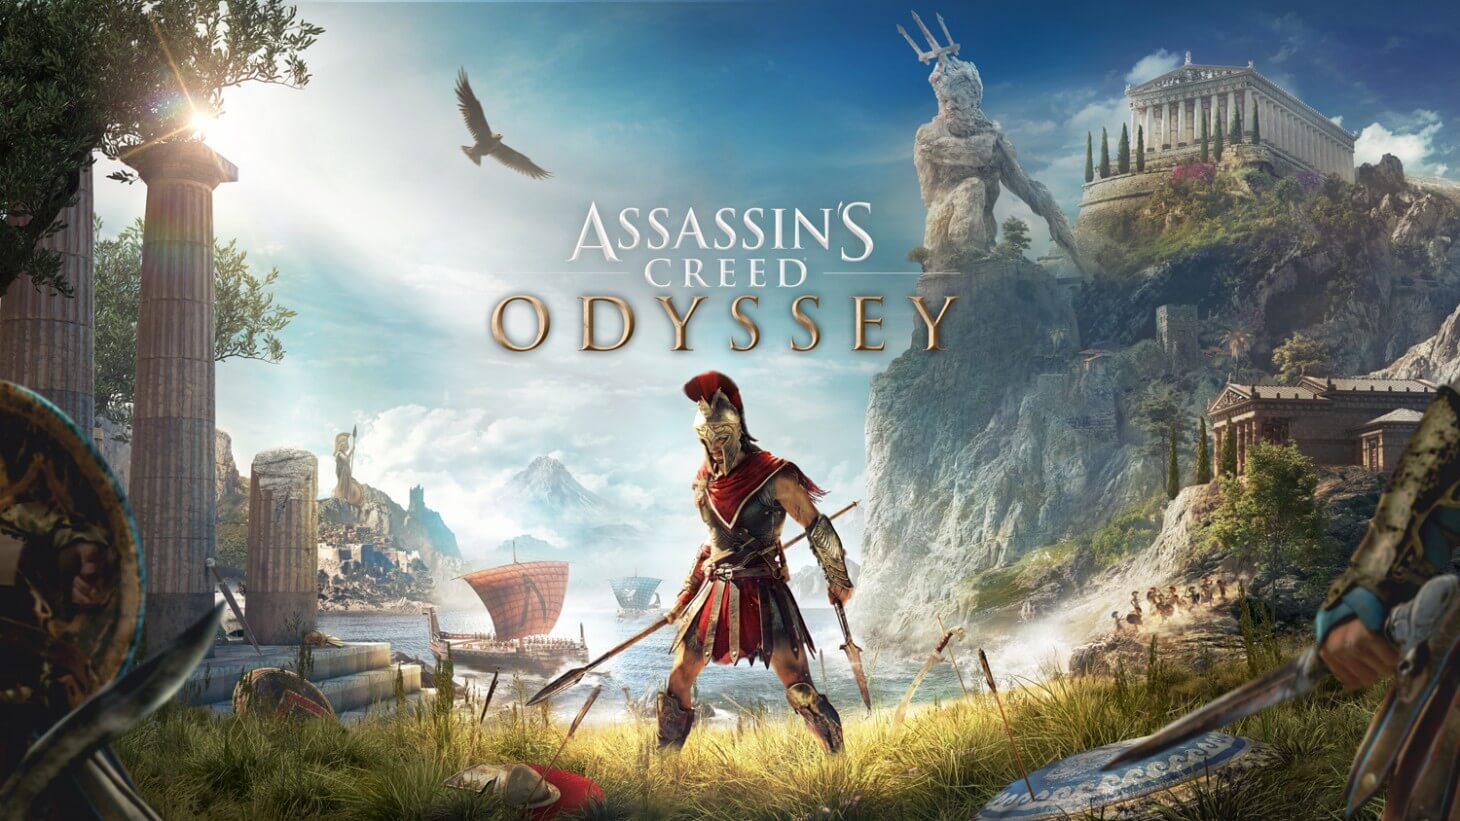 Патч Assassin's Creed Odyssey 1.5.0 доступен для скачивания, выложены полные заметки о патче